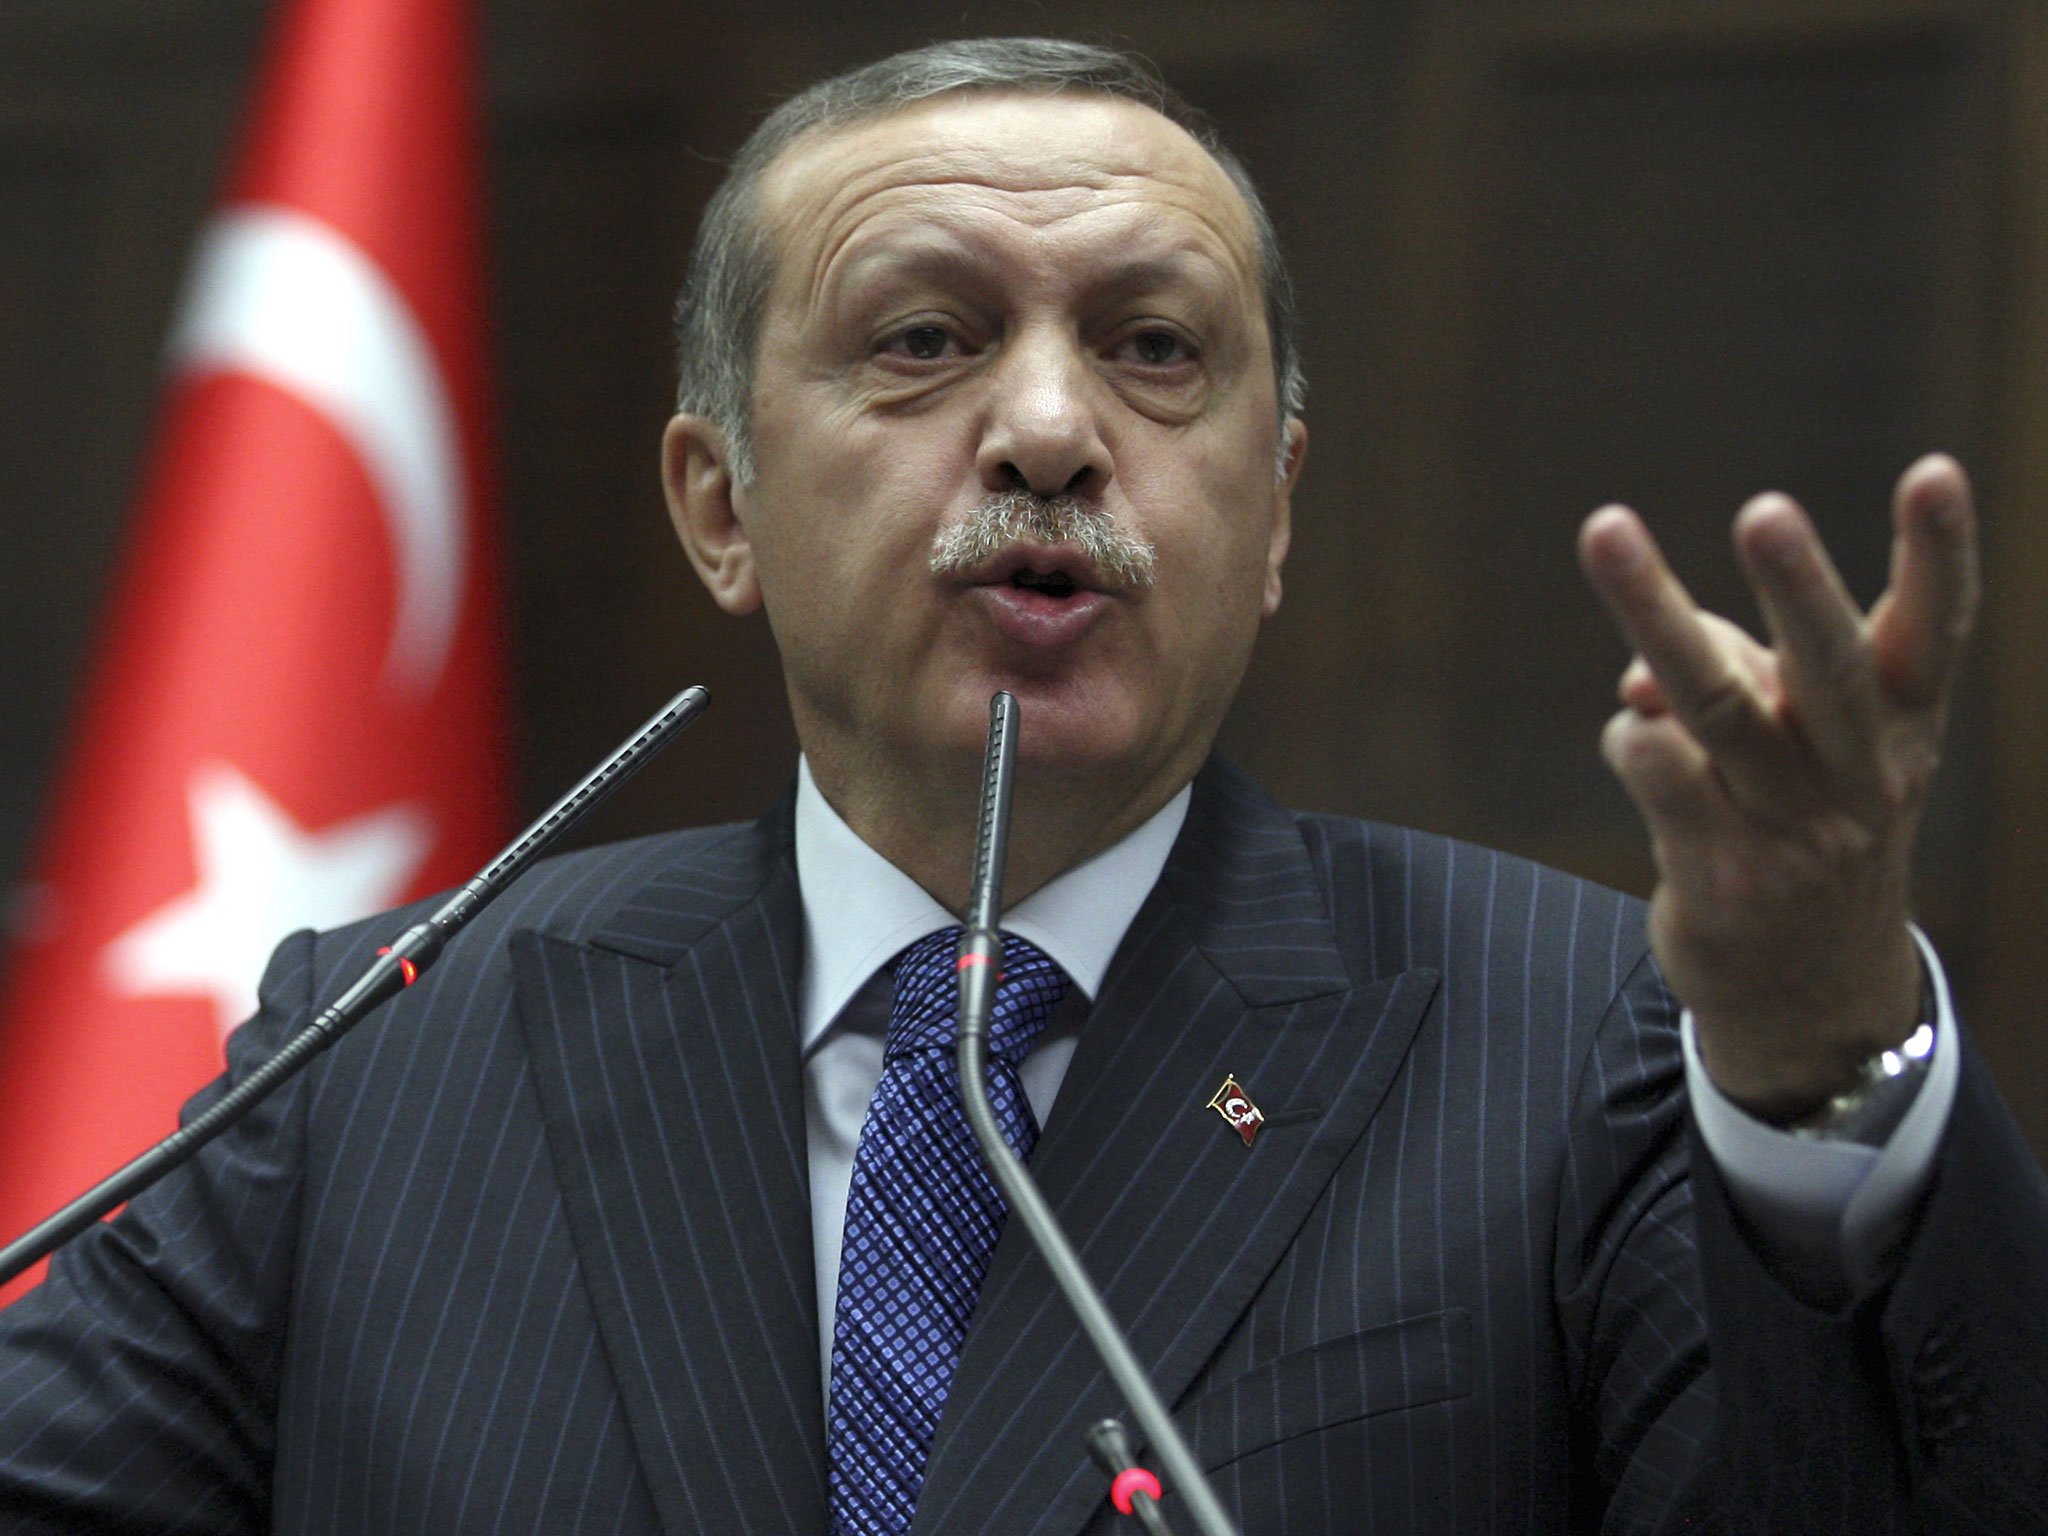 Gulen movement threat to world: Erdogan